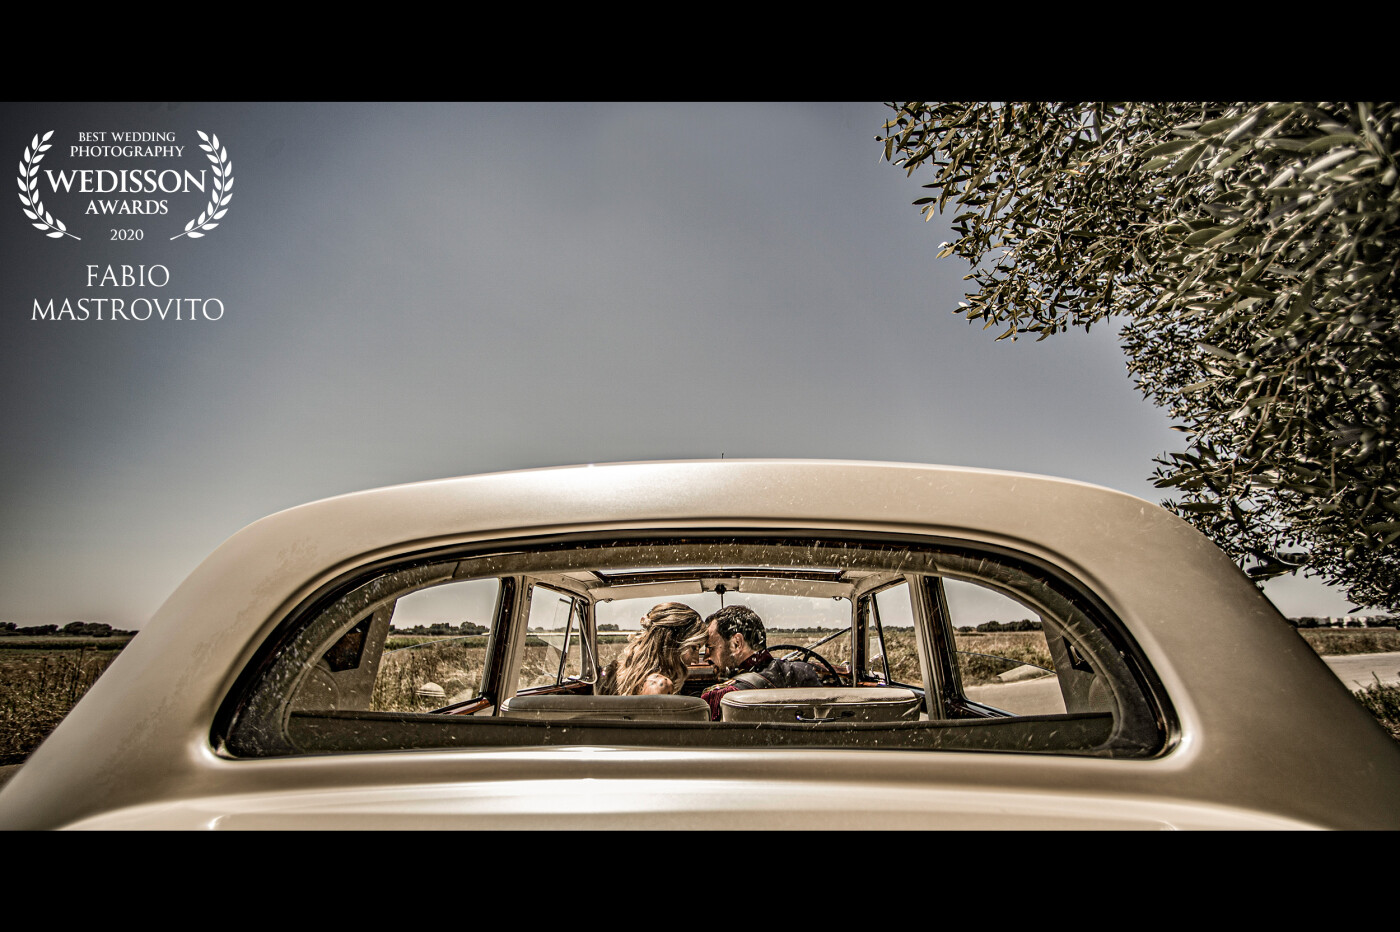 Scatto grandangolare, coppia di sposi fotografati attraverso il lunotto della loro auto vintage. Crea una prospettiva insolita, quasi surreale.